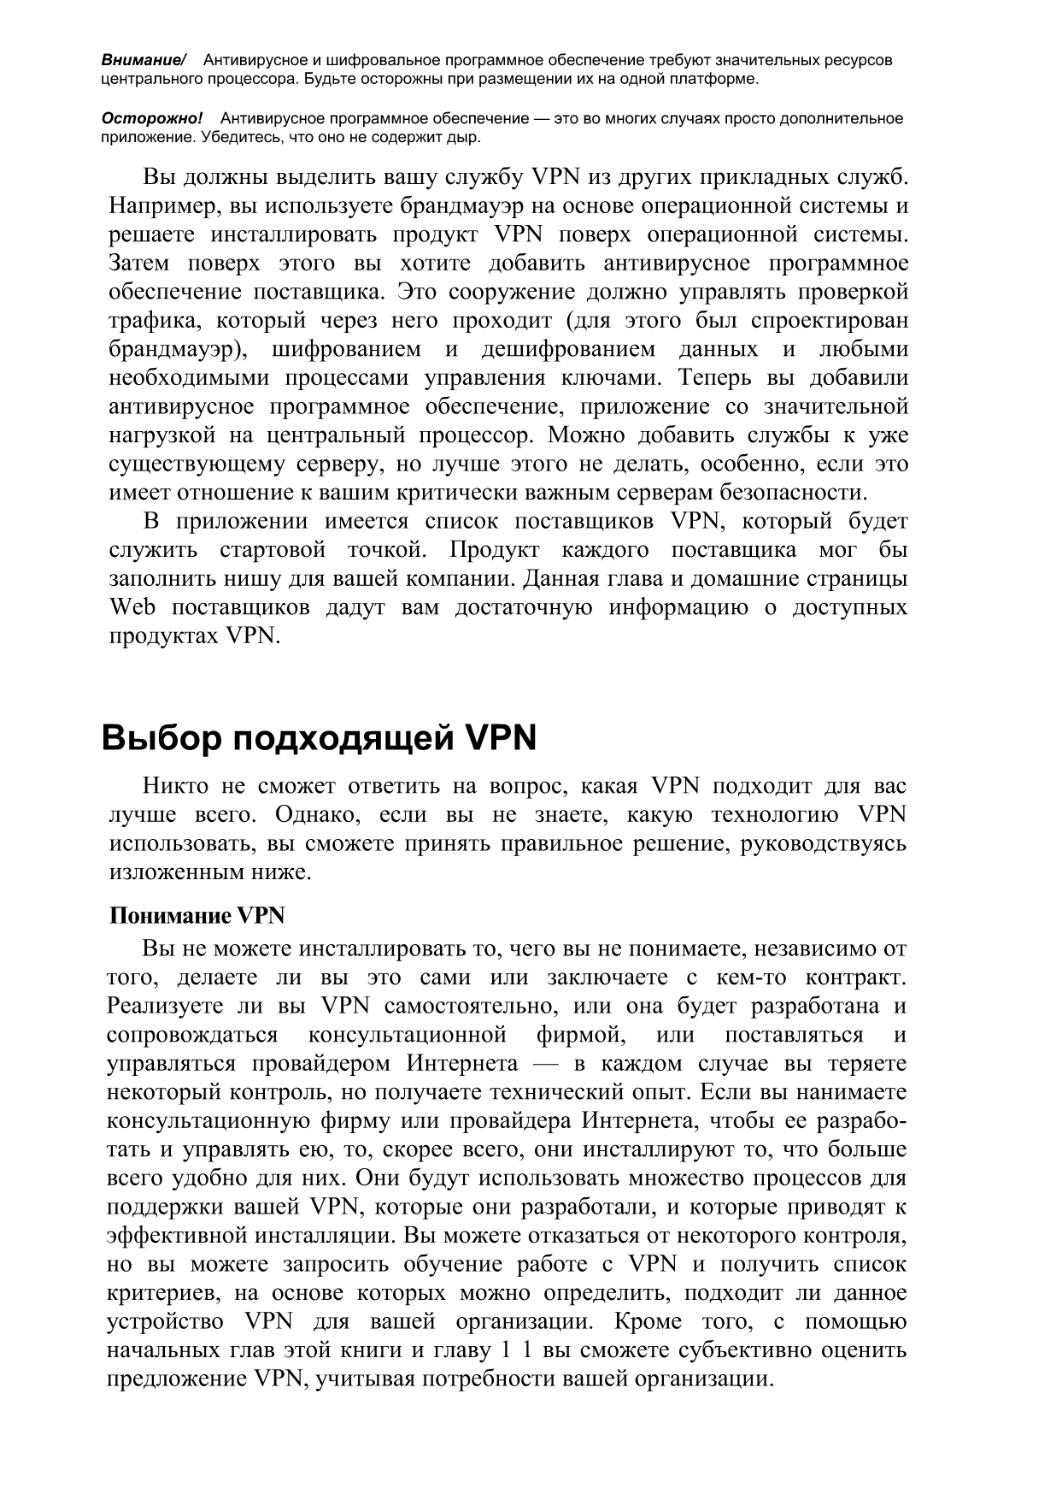 Выбор подходящей VPN